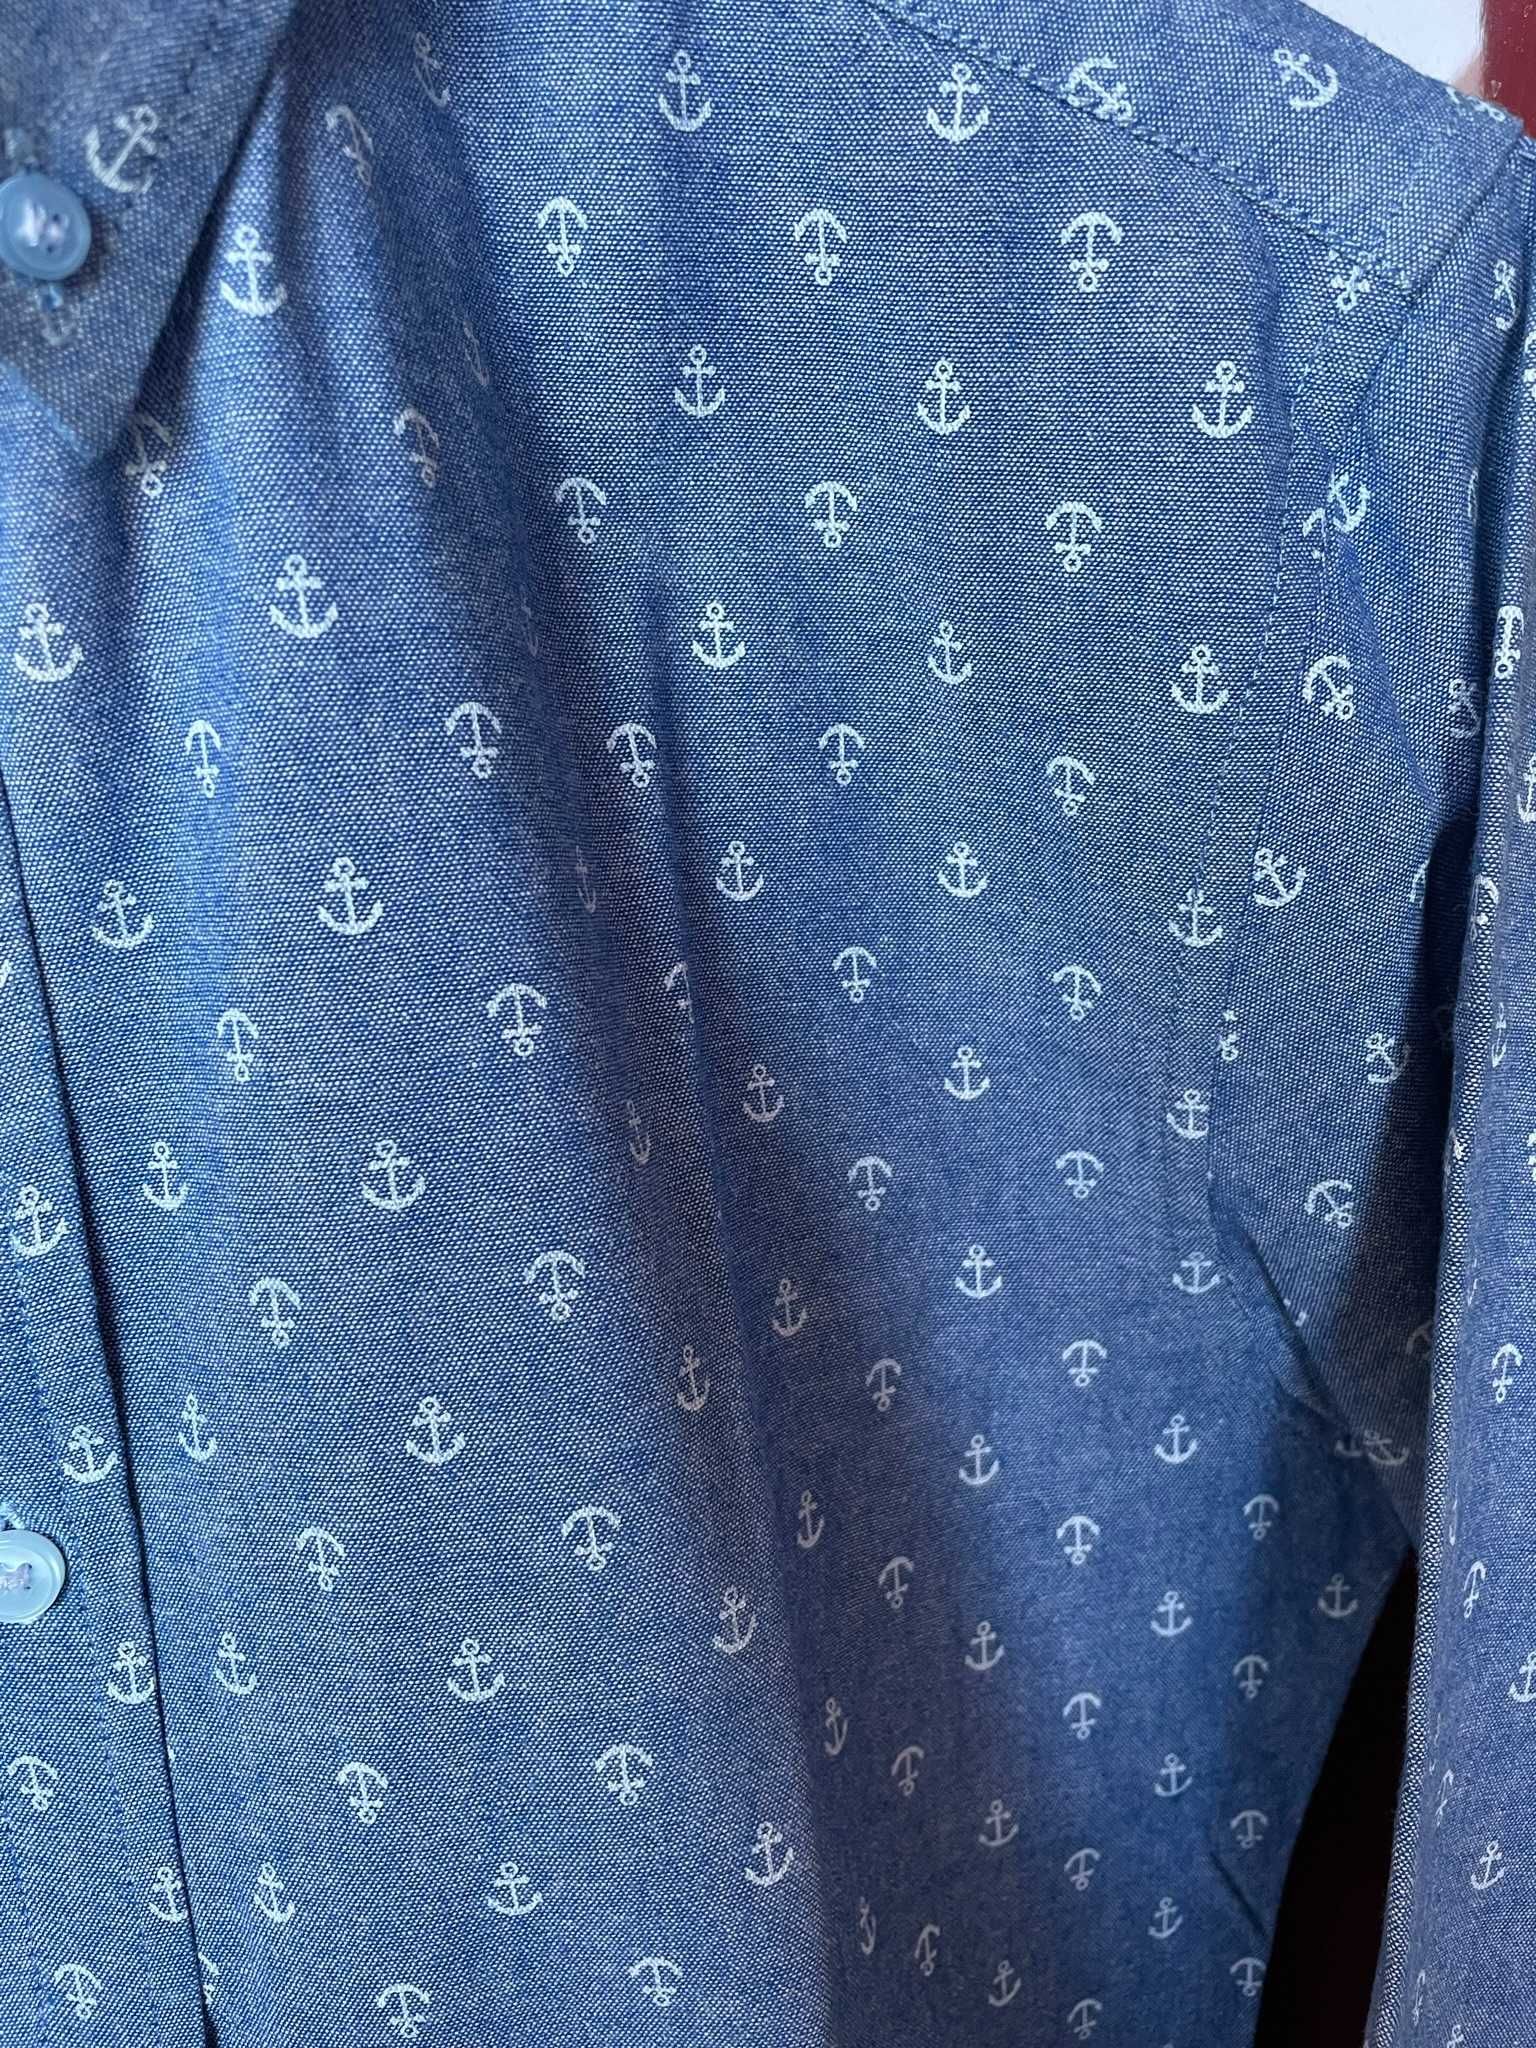 Camisa slim fit azul estampada com âncoras brancas - XS